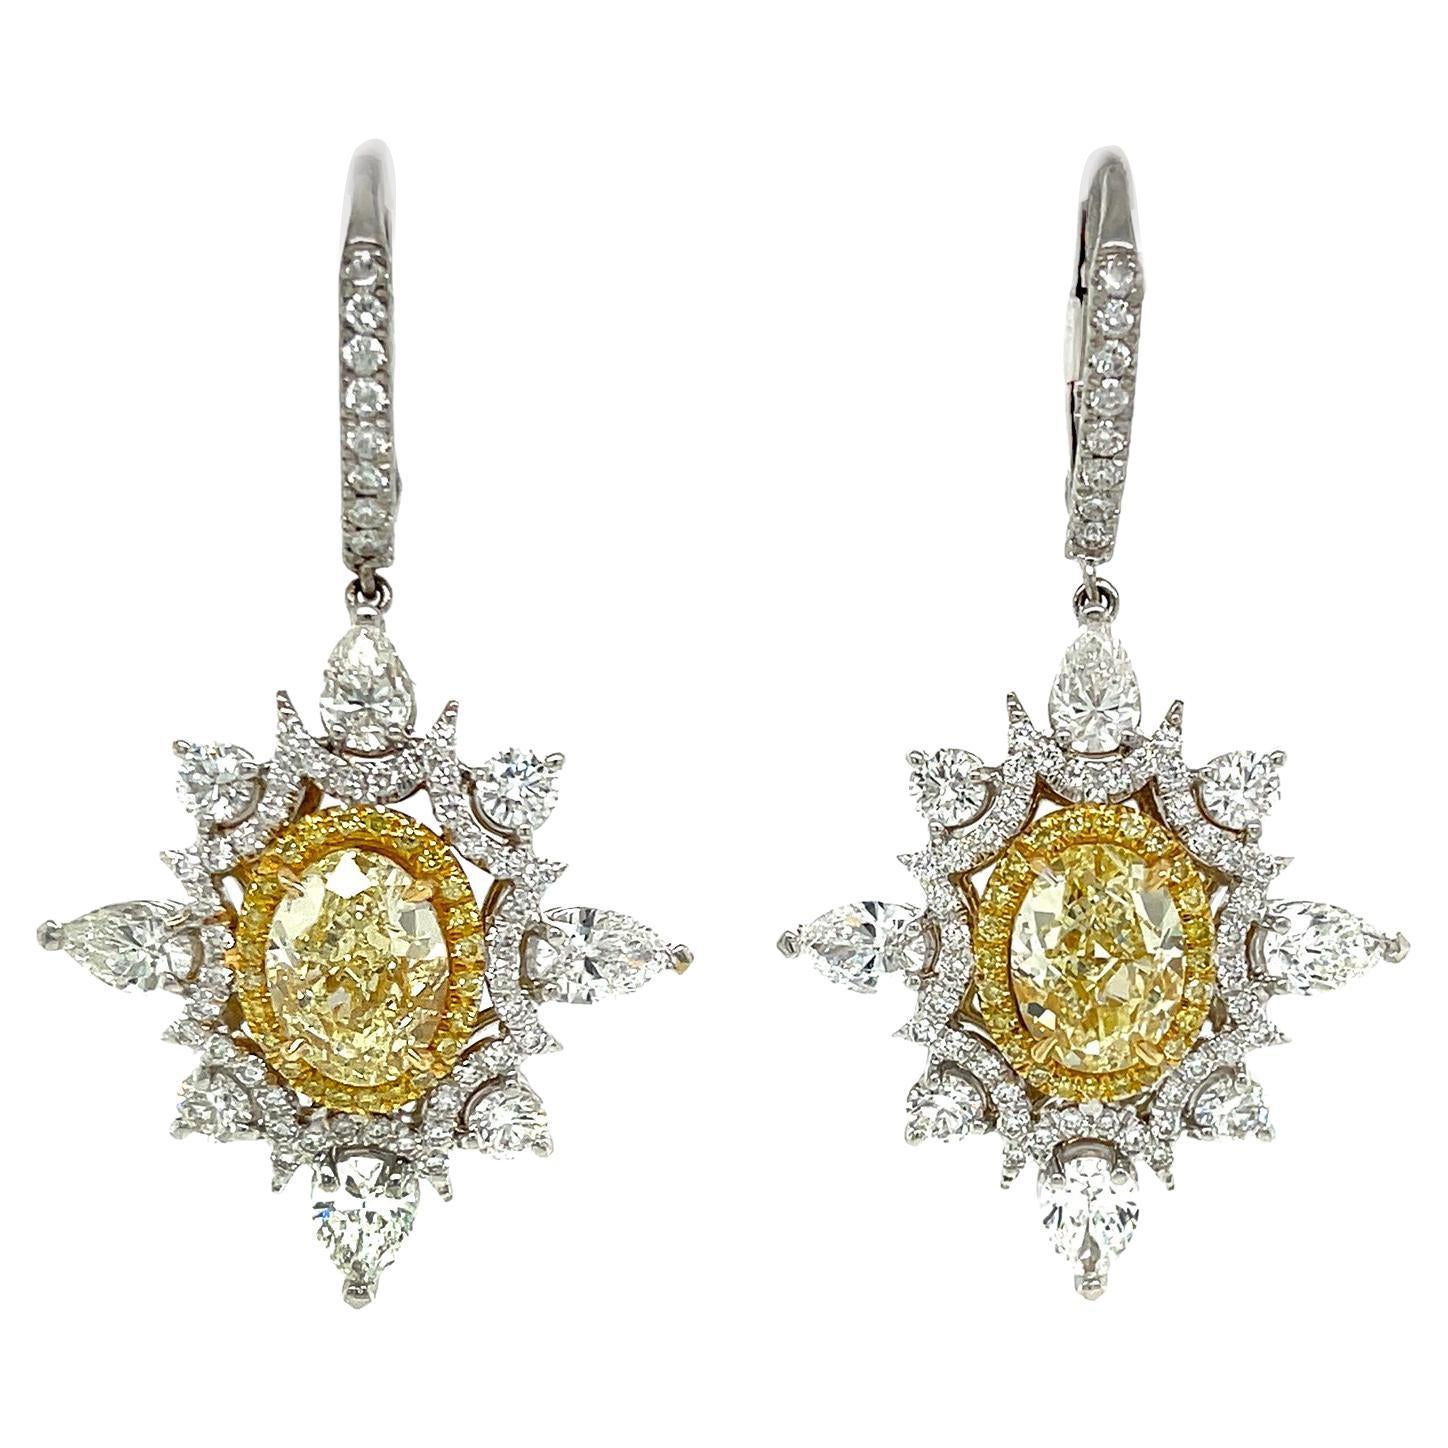 4 Carat Fancy Light Yellow Diamond Drop Earrings, Gia Certified IF, in 18k Gold. For Sale